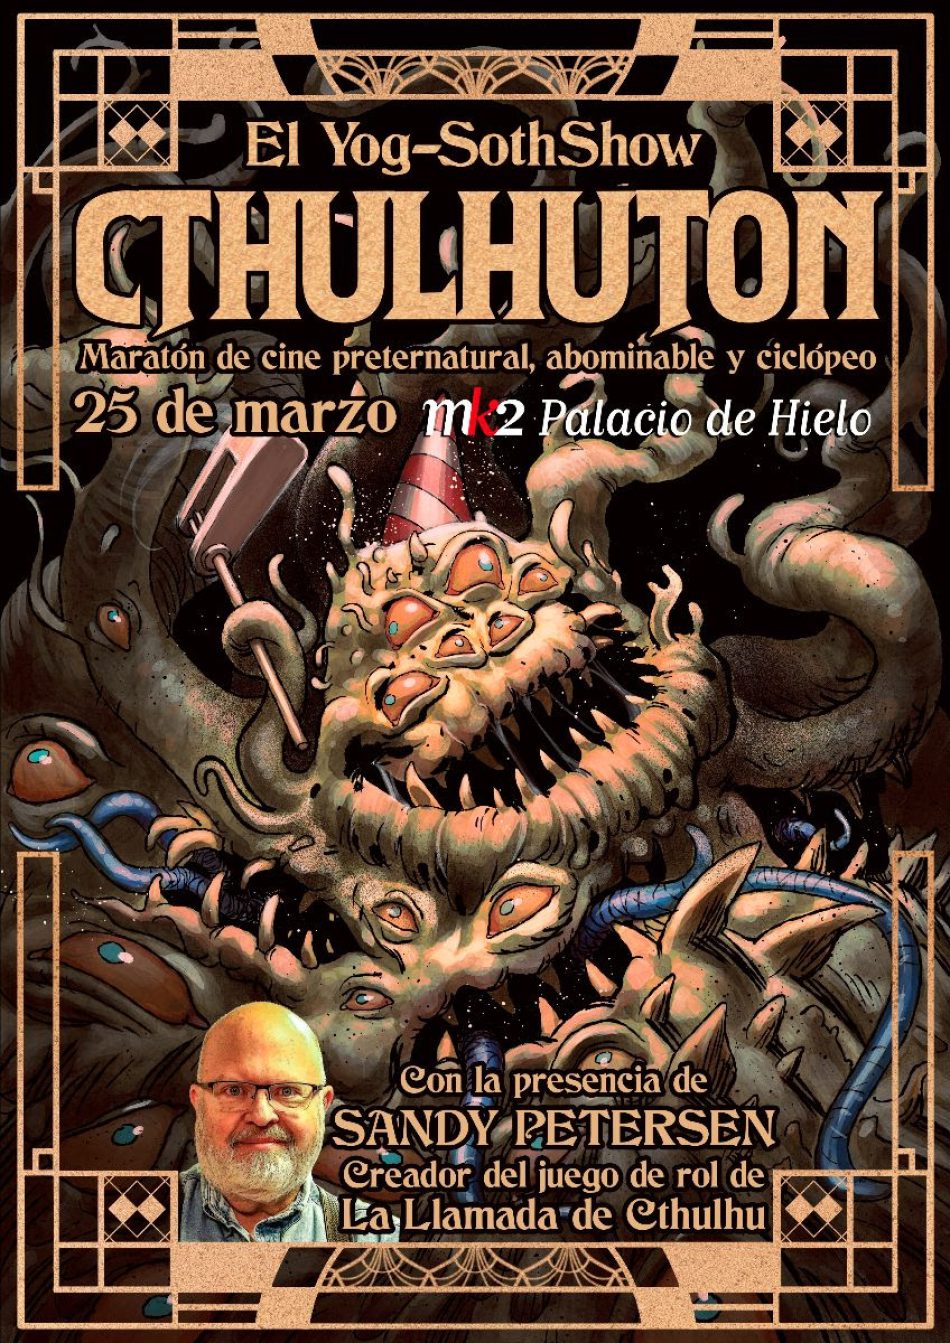 «Cthulhuton», muestra de cine para fans de H.P. Lovecraft, tendrá lugar el 25 de marzo en el cine mk2 Palacio de Hielo de Madrid